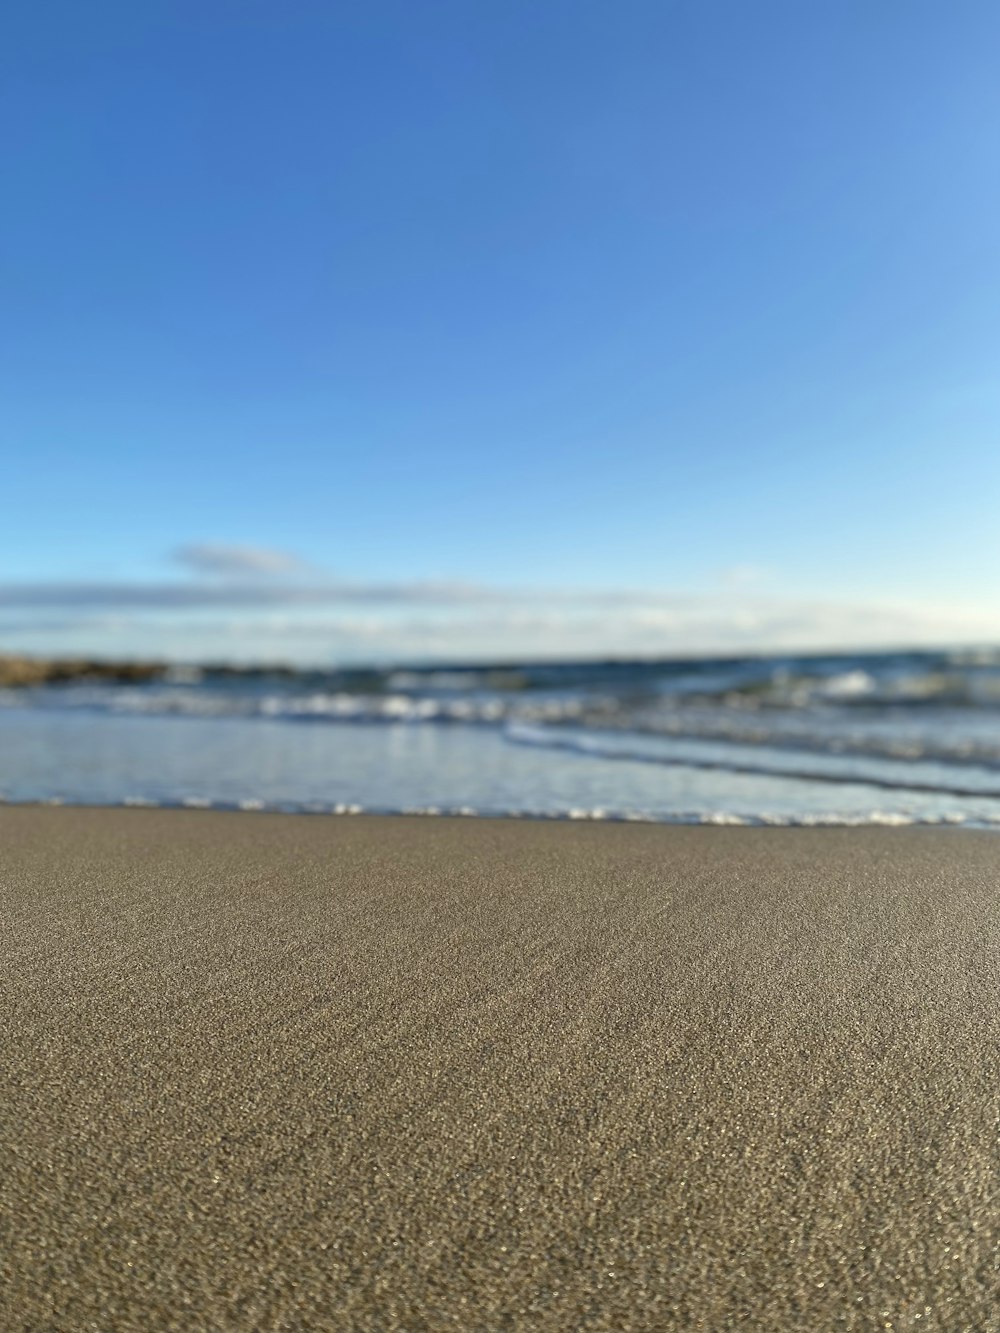 Ein Sandstrand direkt am Meer unter blauem Himmel